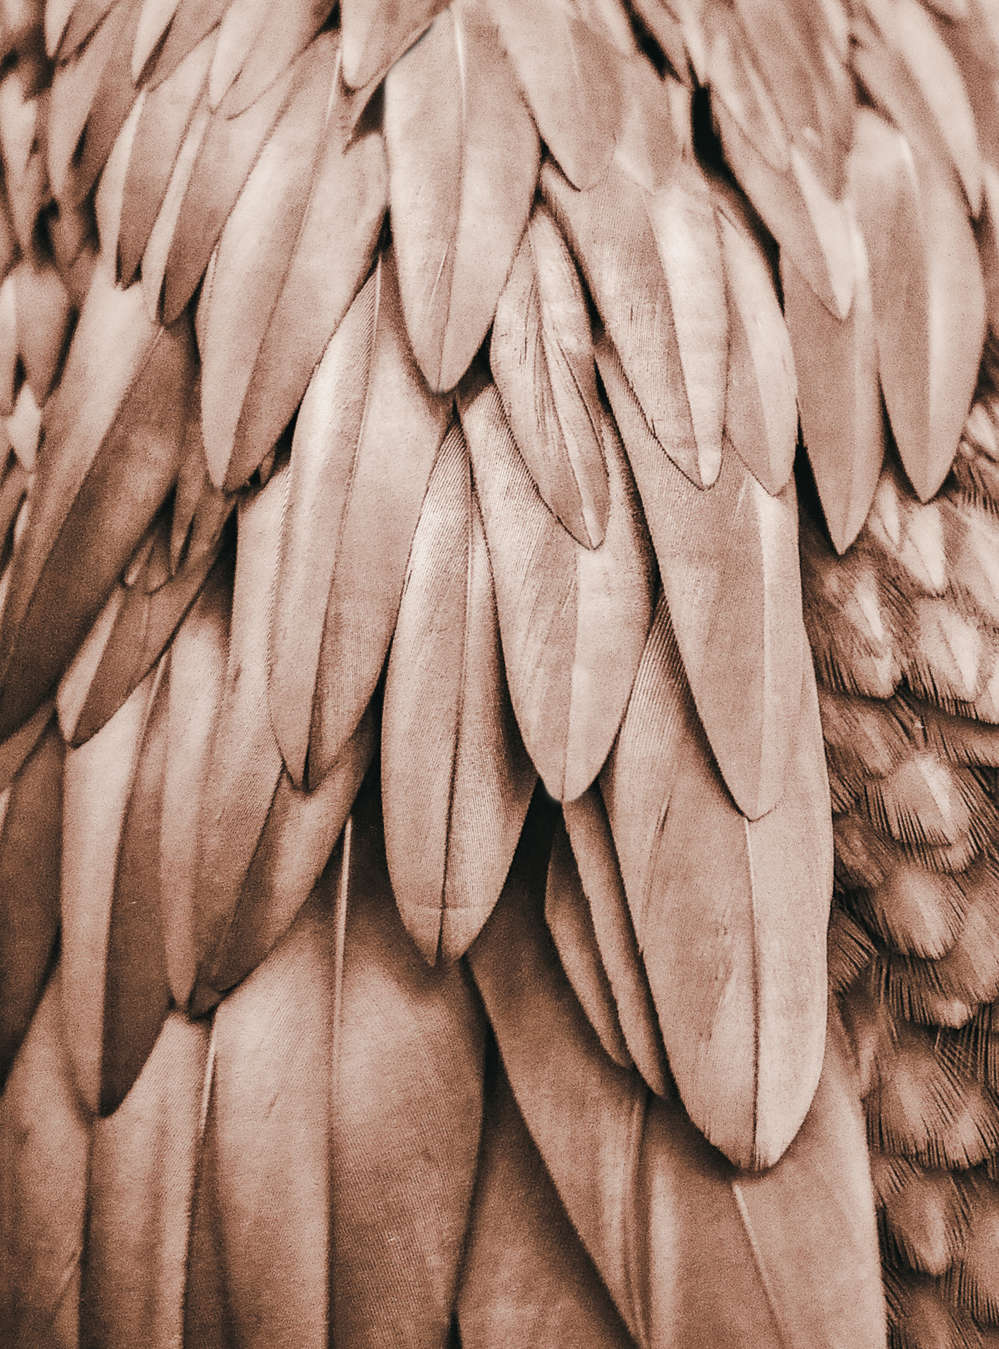             Papier peint plumes ailes sépia marron
        